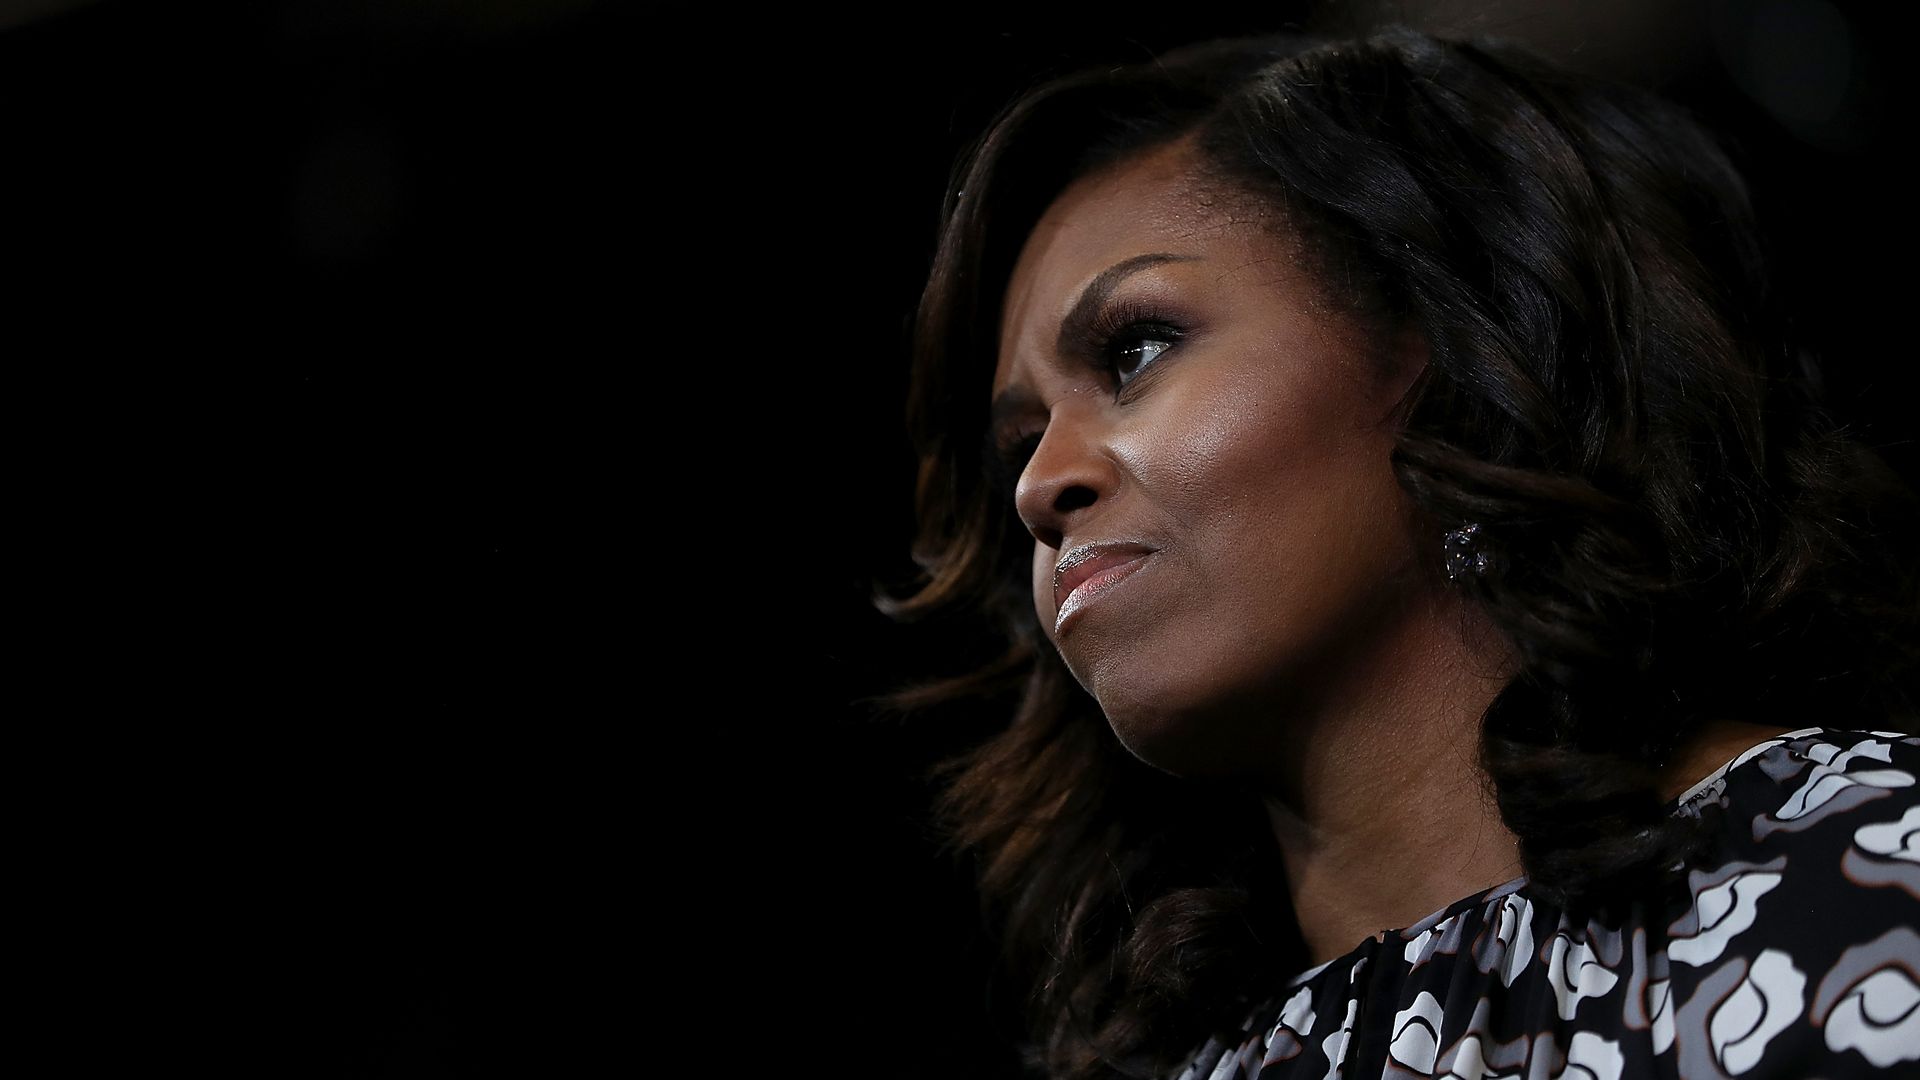 Photo of Michelle Obama's side profile